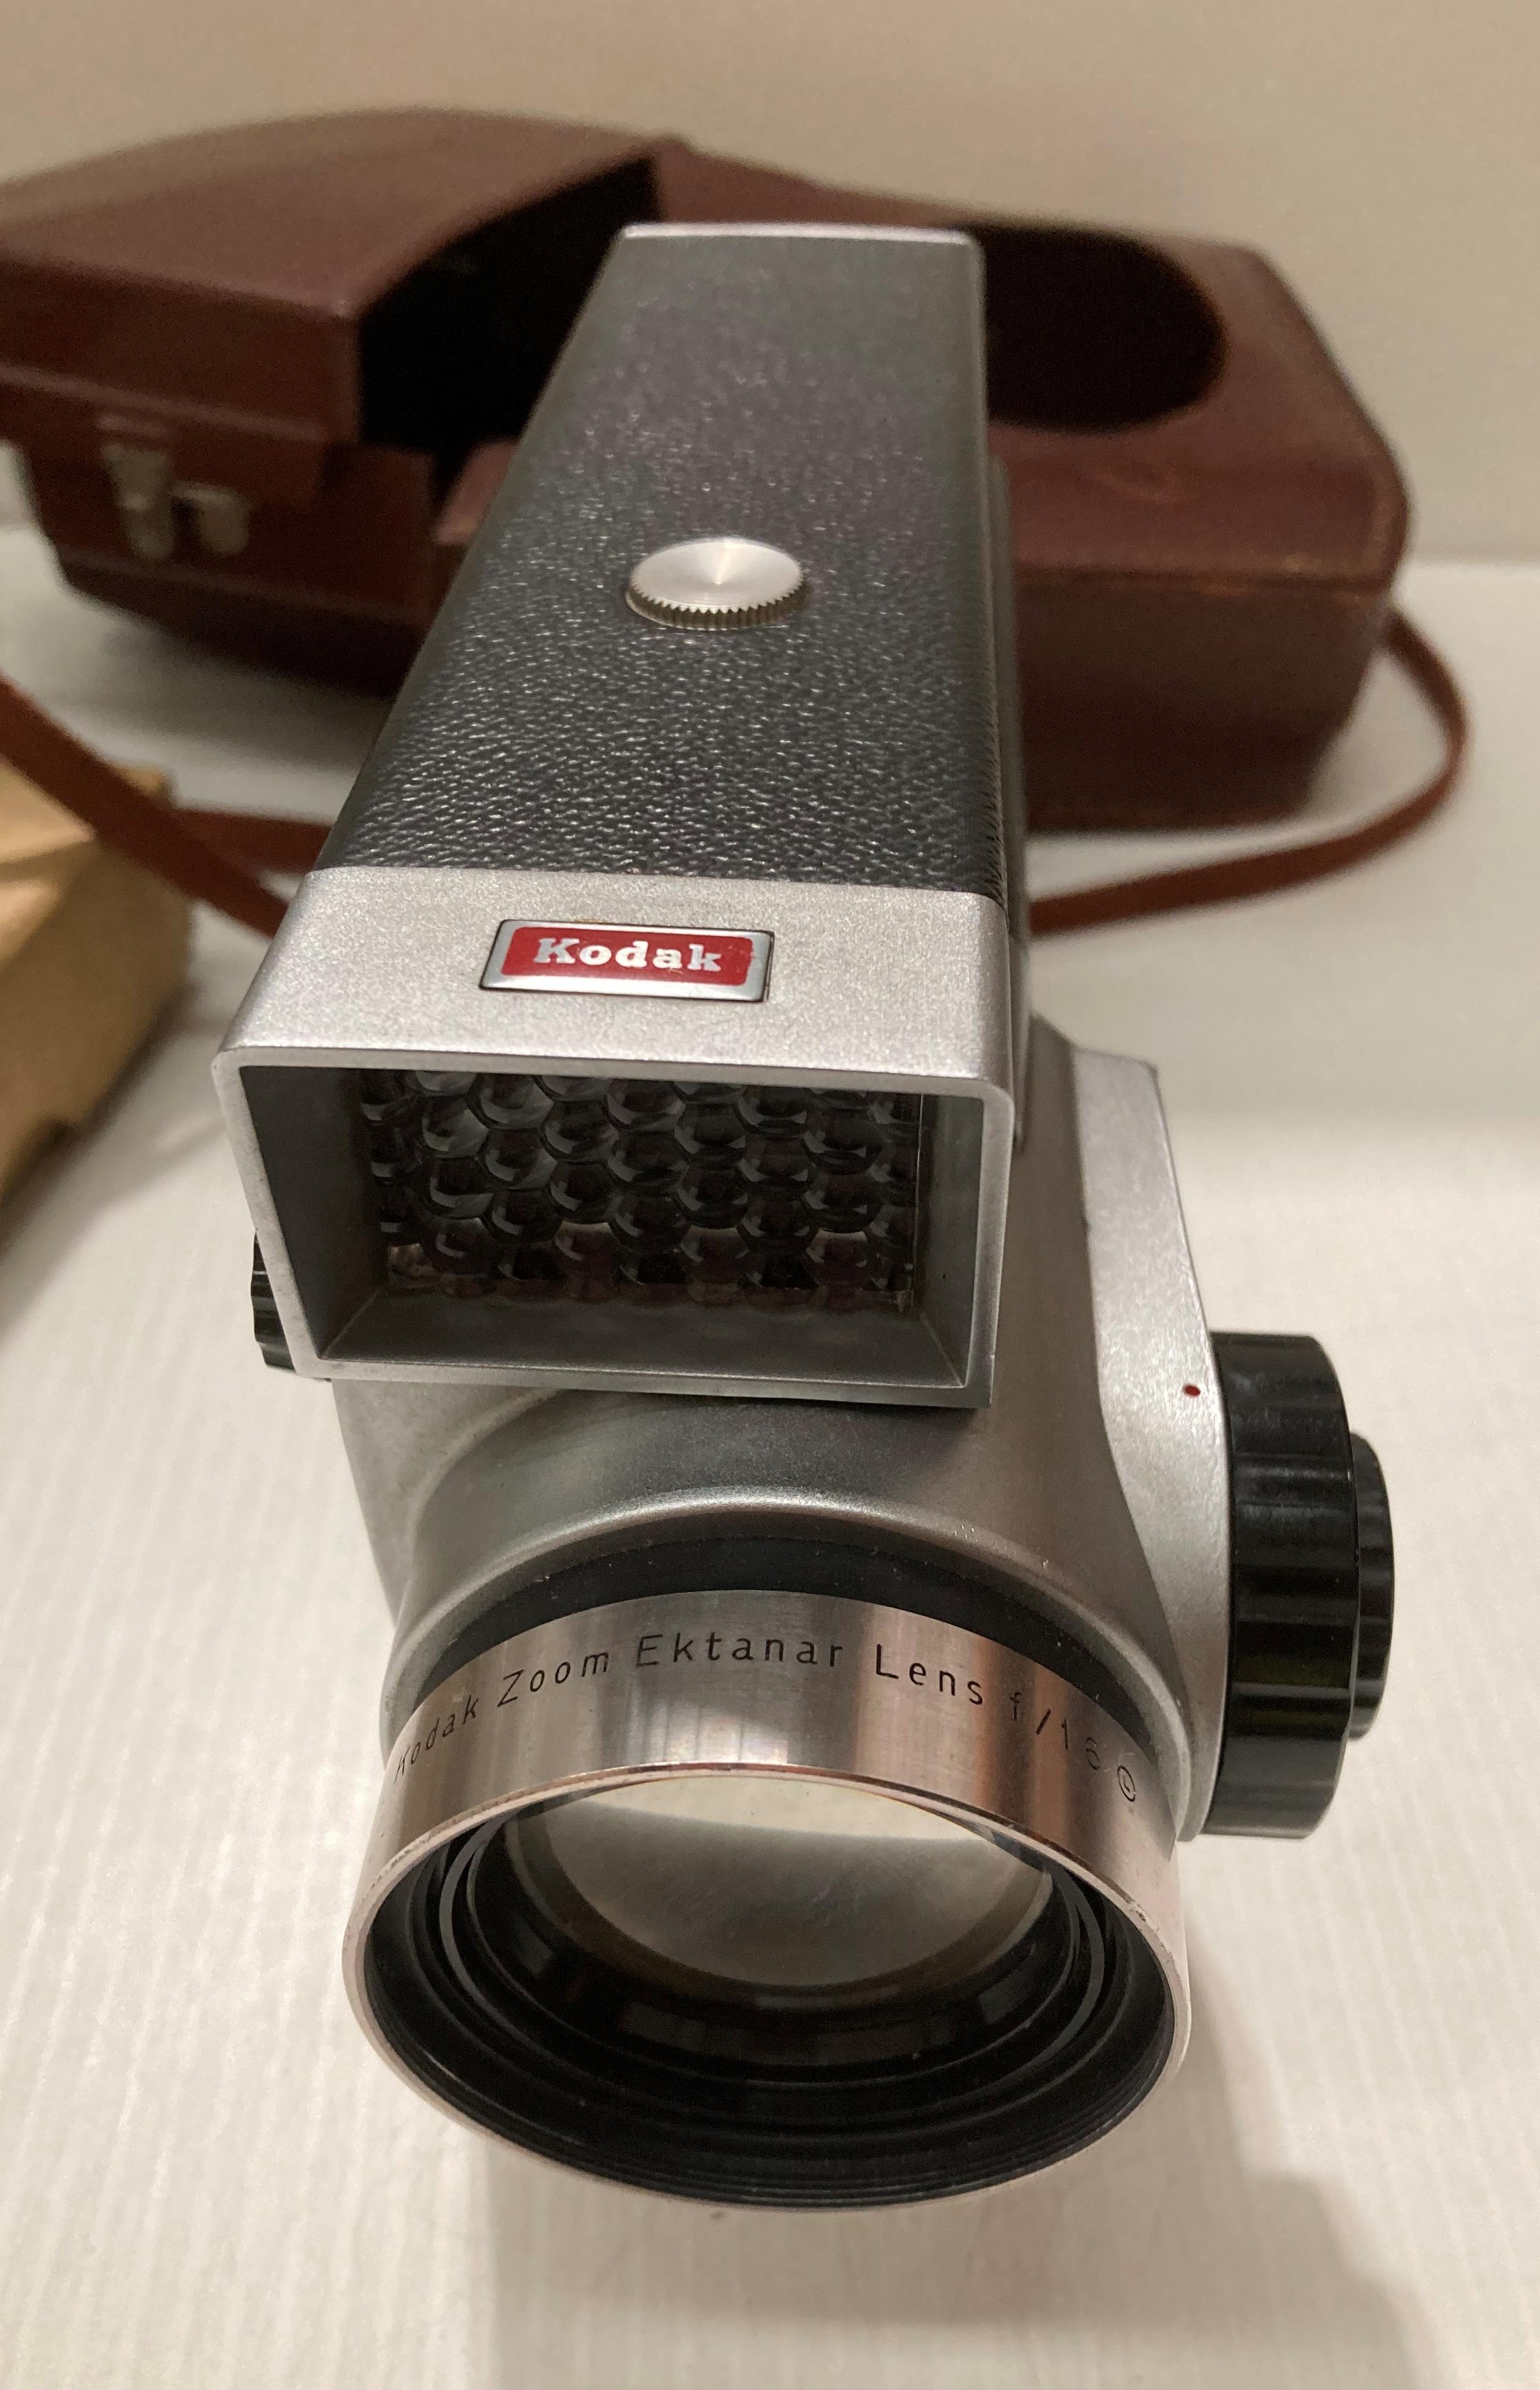 A Kodak Spool camera model 300m reflex F 1.6 in case, a 'Bolco' condenser lens and a Zorki 6 F 3. - Image 4 of 10